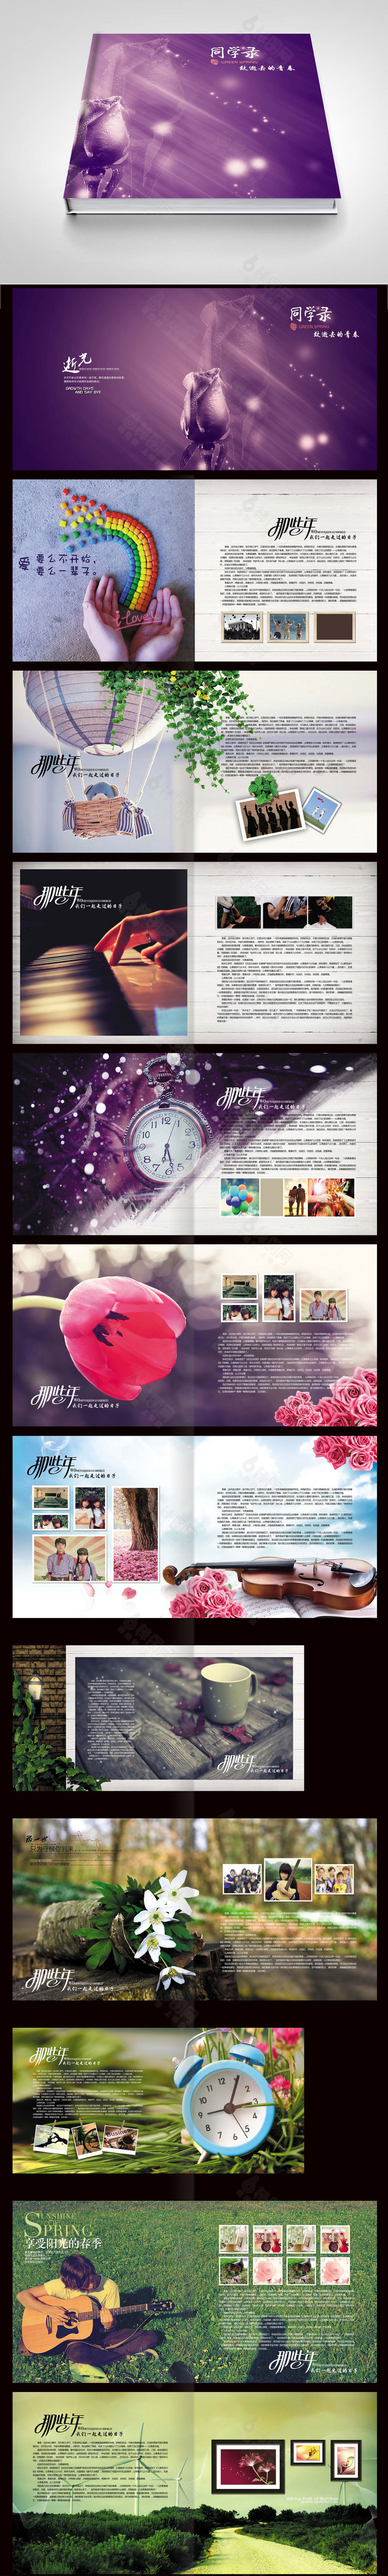 紫色梦幻青春纪念册同学录画册设计